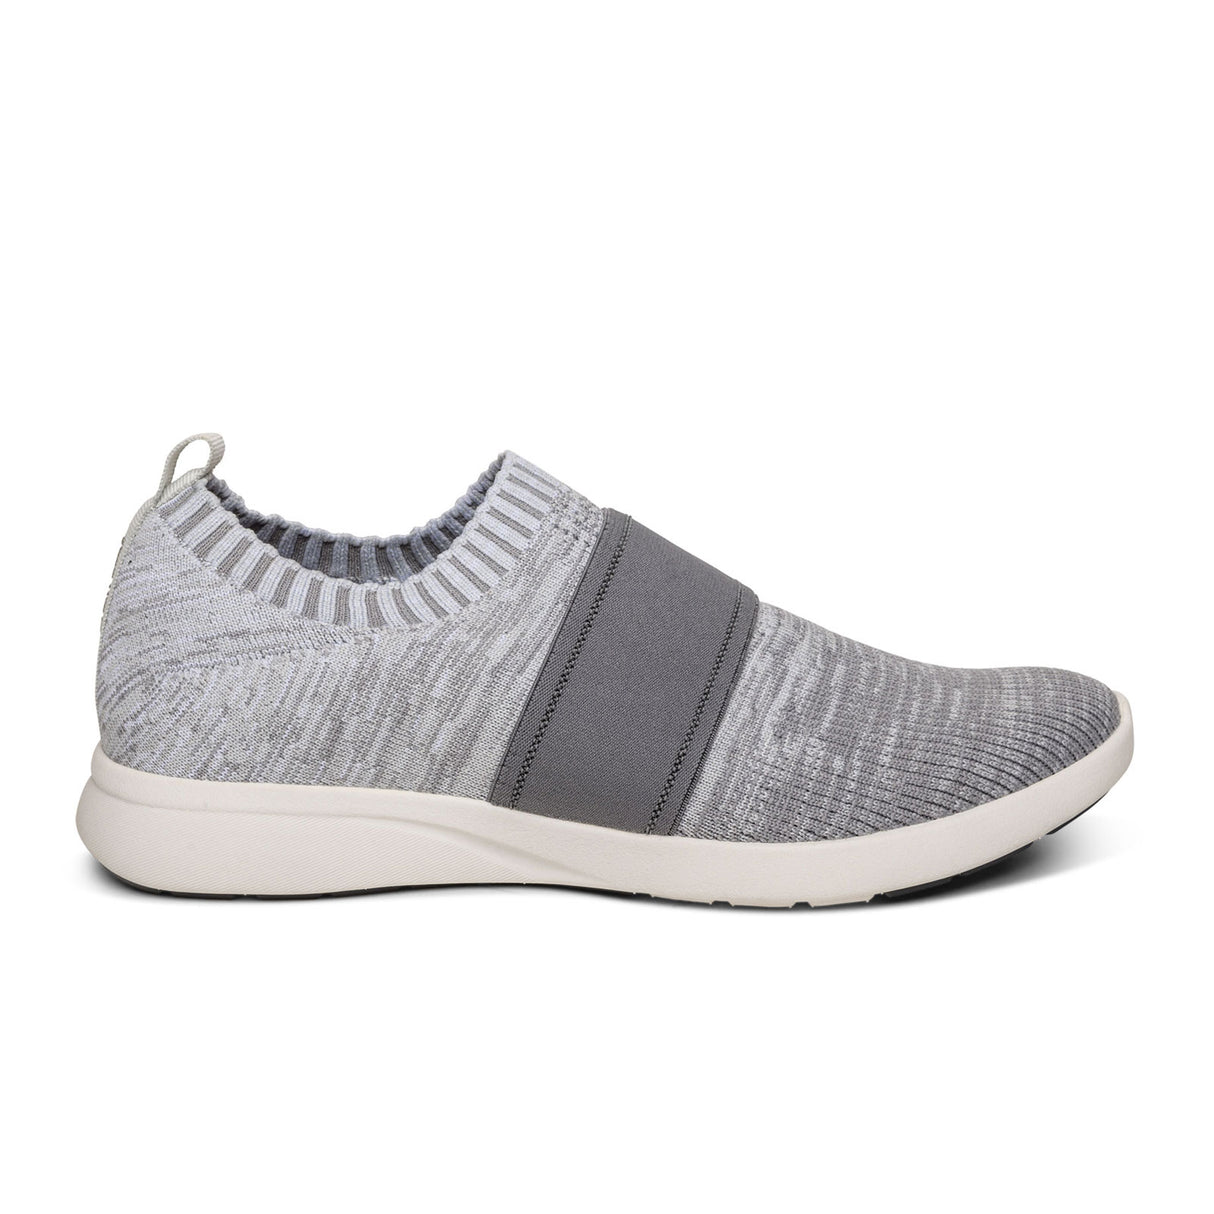 Aetrex Demi Slip On Sneaker (Women) - Grey Dress-Casual - Sneakers - The Heel Shoe Fitters